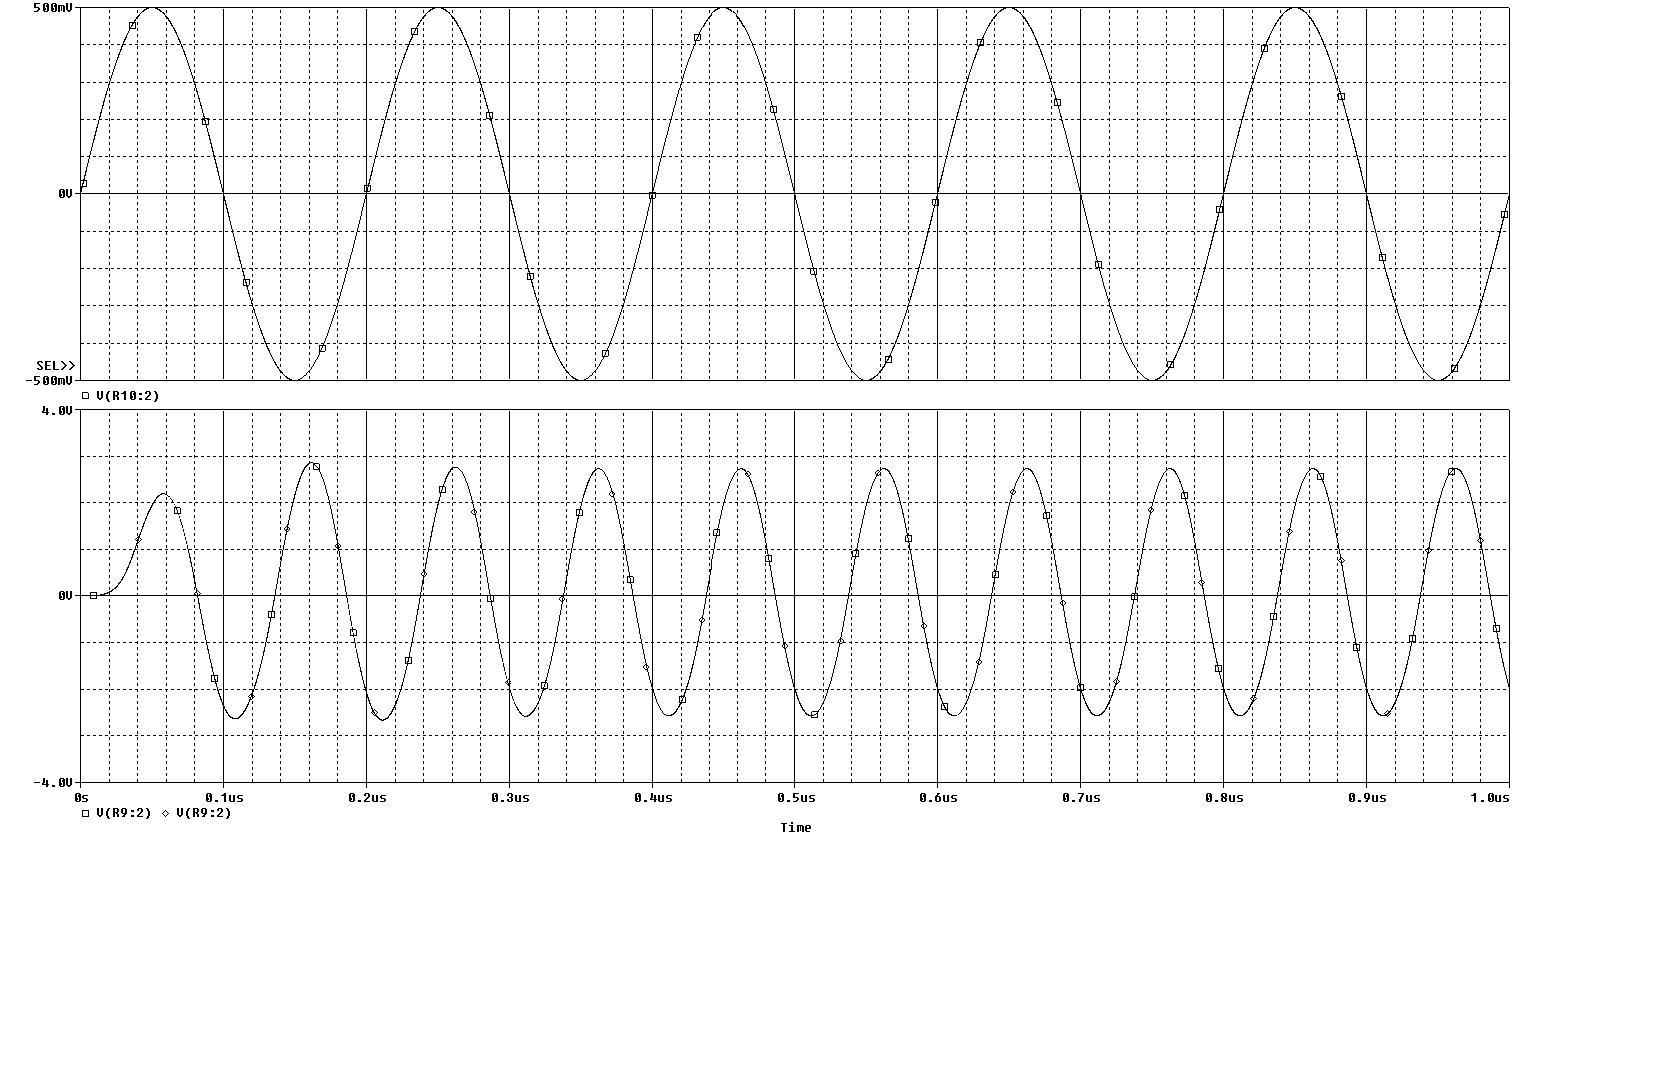 BJT_Frequency_Doubler_waveforms.jpg